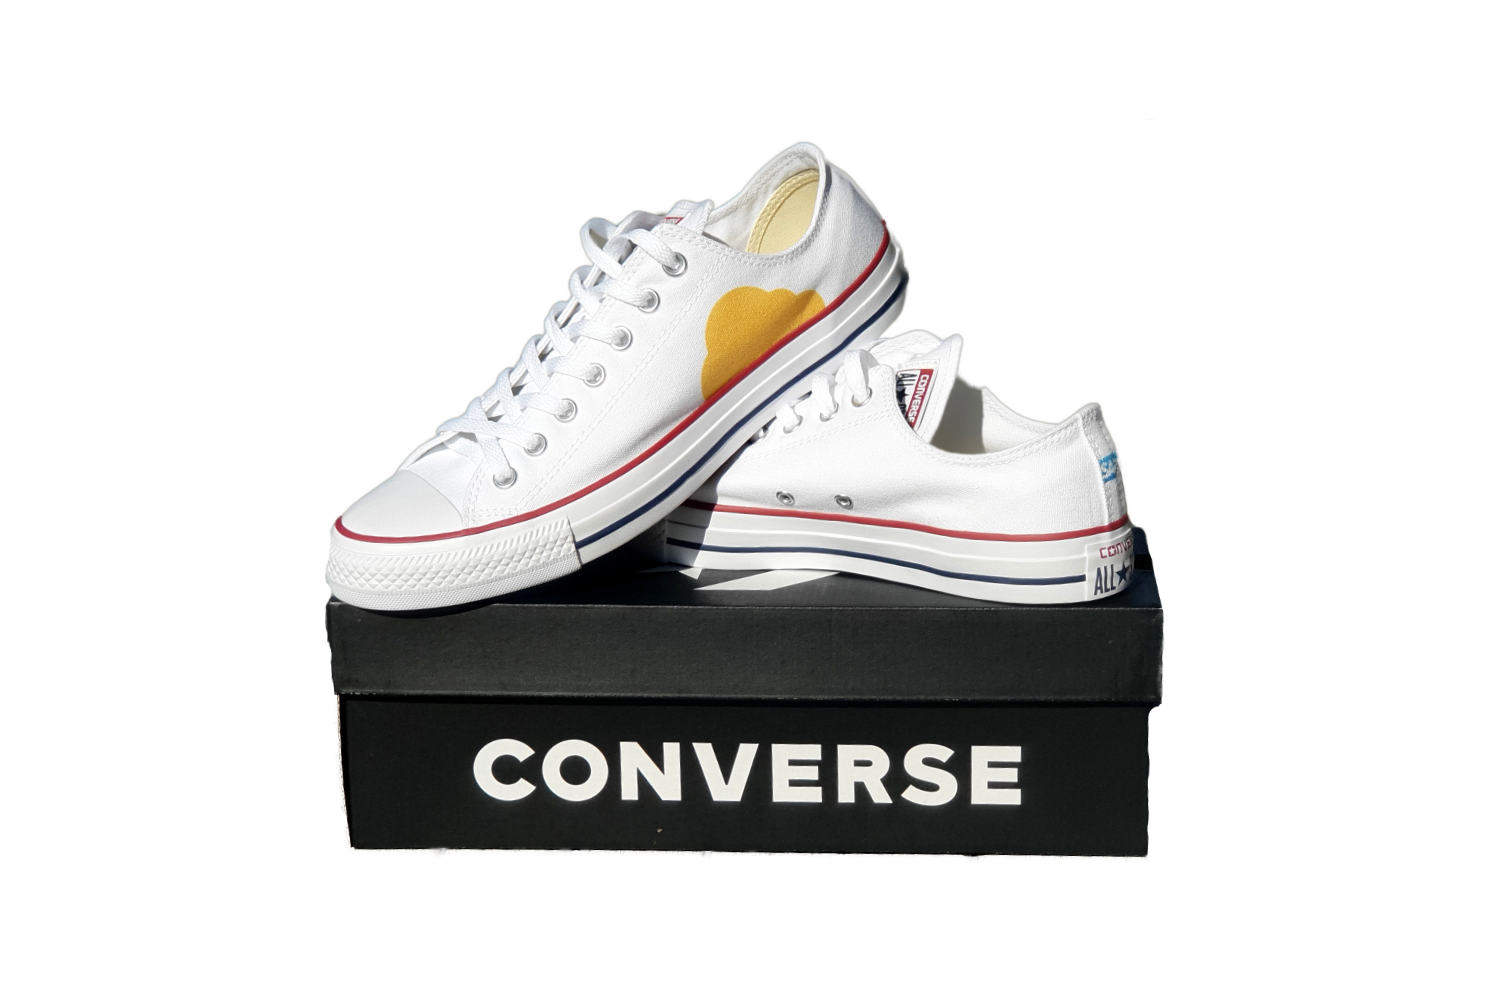 Sneaker Converse Low Profil auf einem schwarzen Schuhkarton mit der Aufschritt Converse